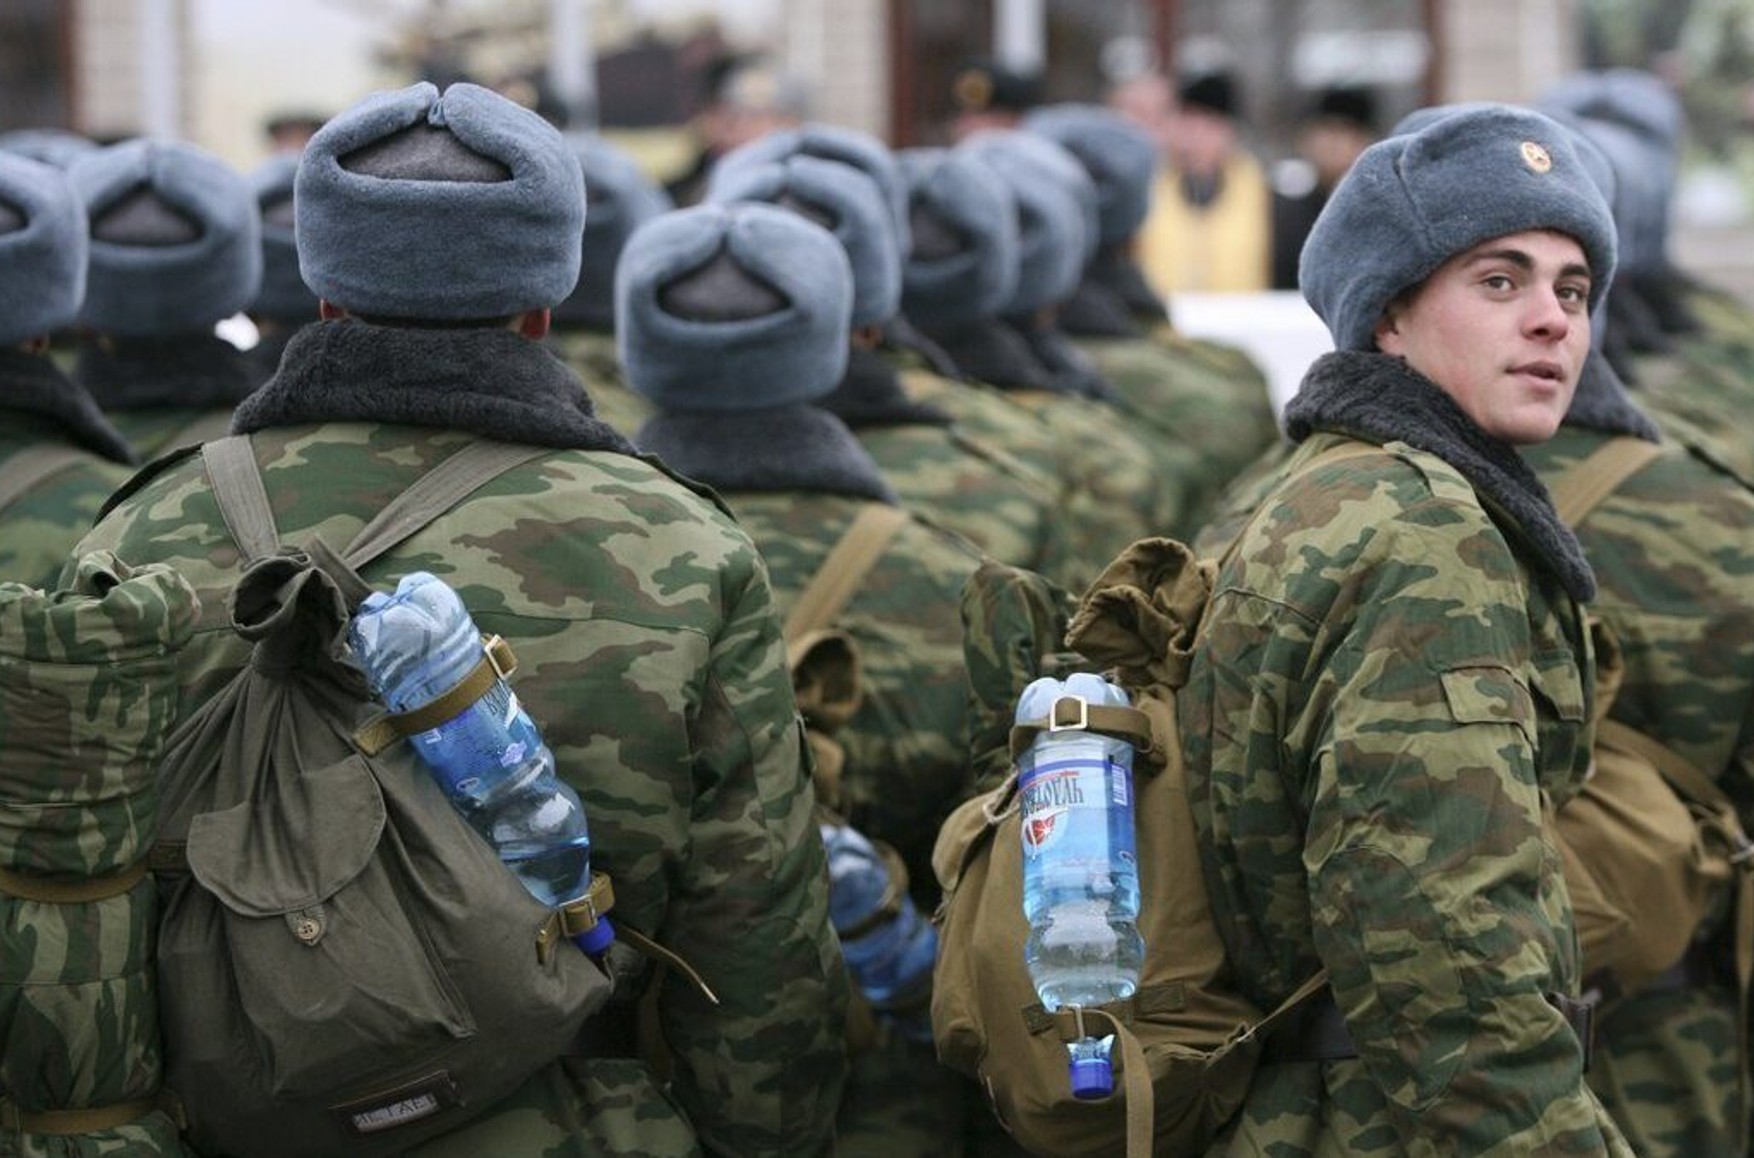 Району Забайкалья поручили выполнить план по набору контрактников на войну с Украиной. При этом власти РФ отрицают планы по мобилизации